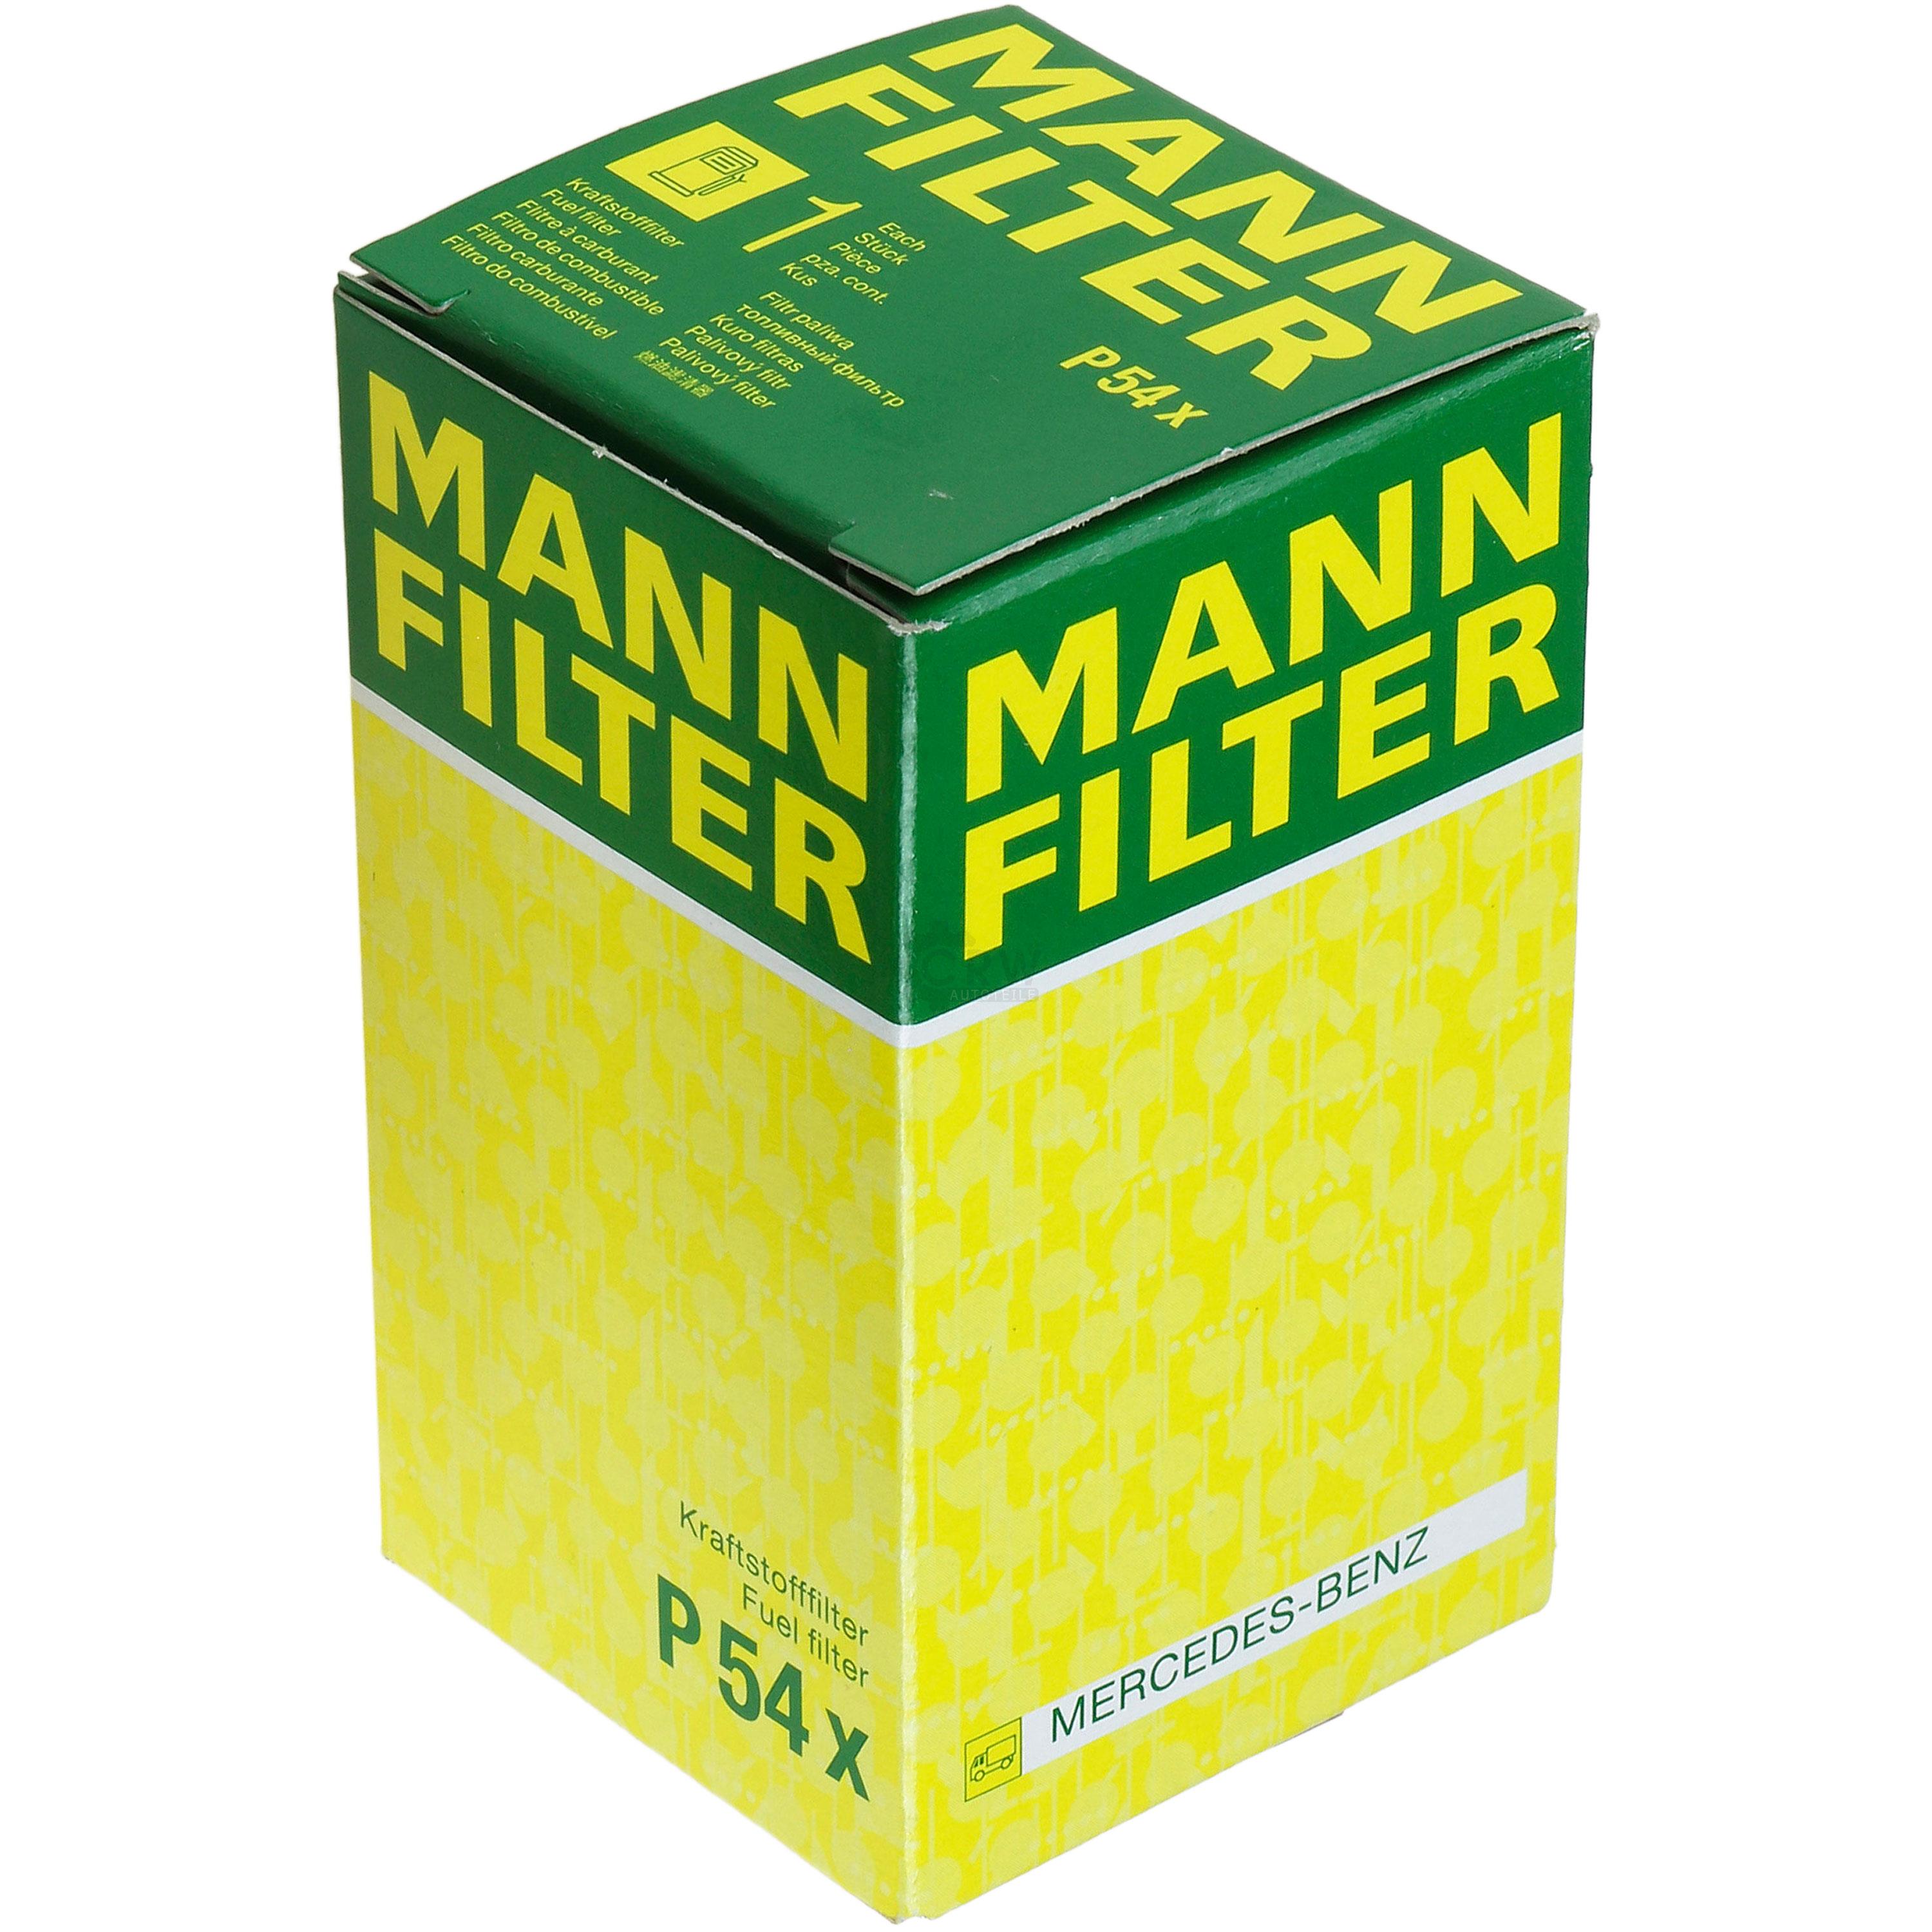 MANN-FILTER Kraftstofffilter P 54 x Fuel Filter